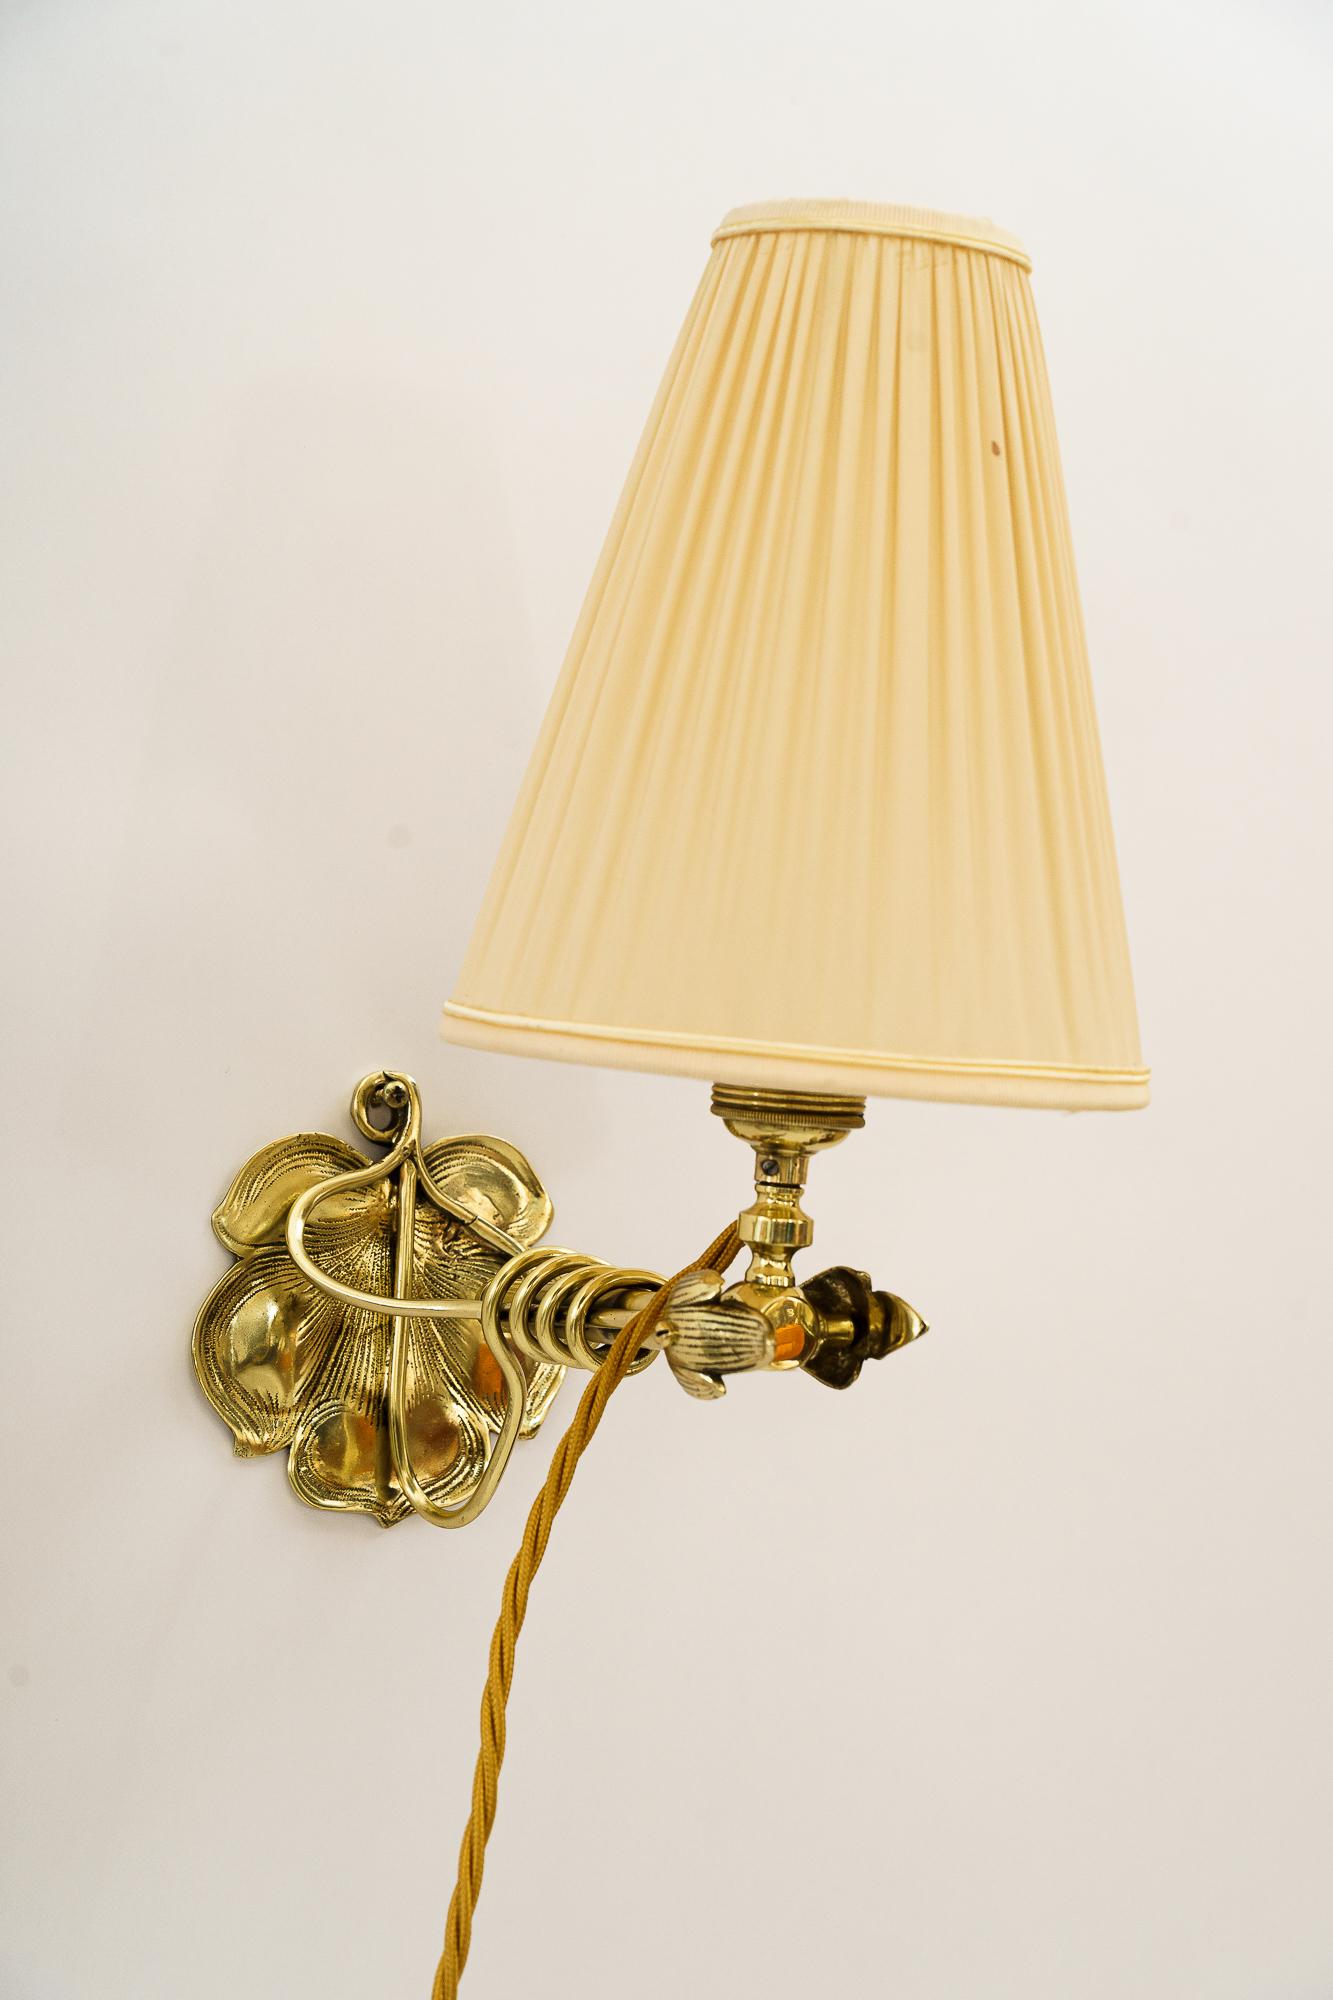 Lampe de table ou applique Jugendstil viennoise vers 1908
Laiton poli et émaillé au four
La deuxième photo montre la lampe en tant qu'applique murale.
L'abat-jour est remplacé (nouveau).